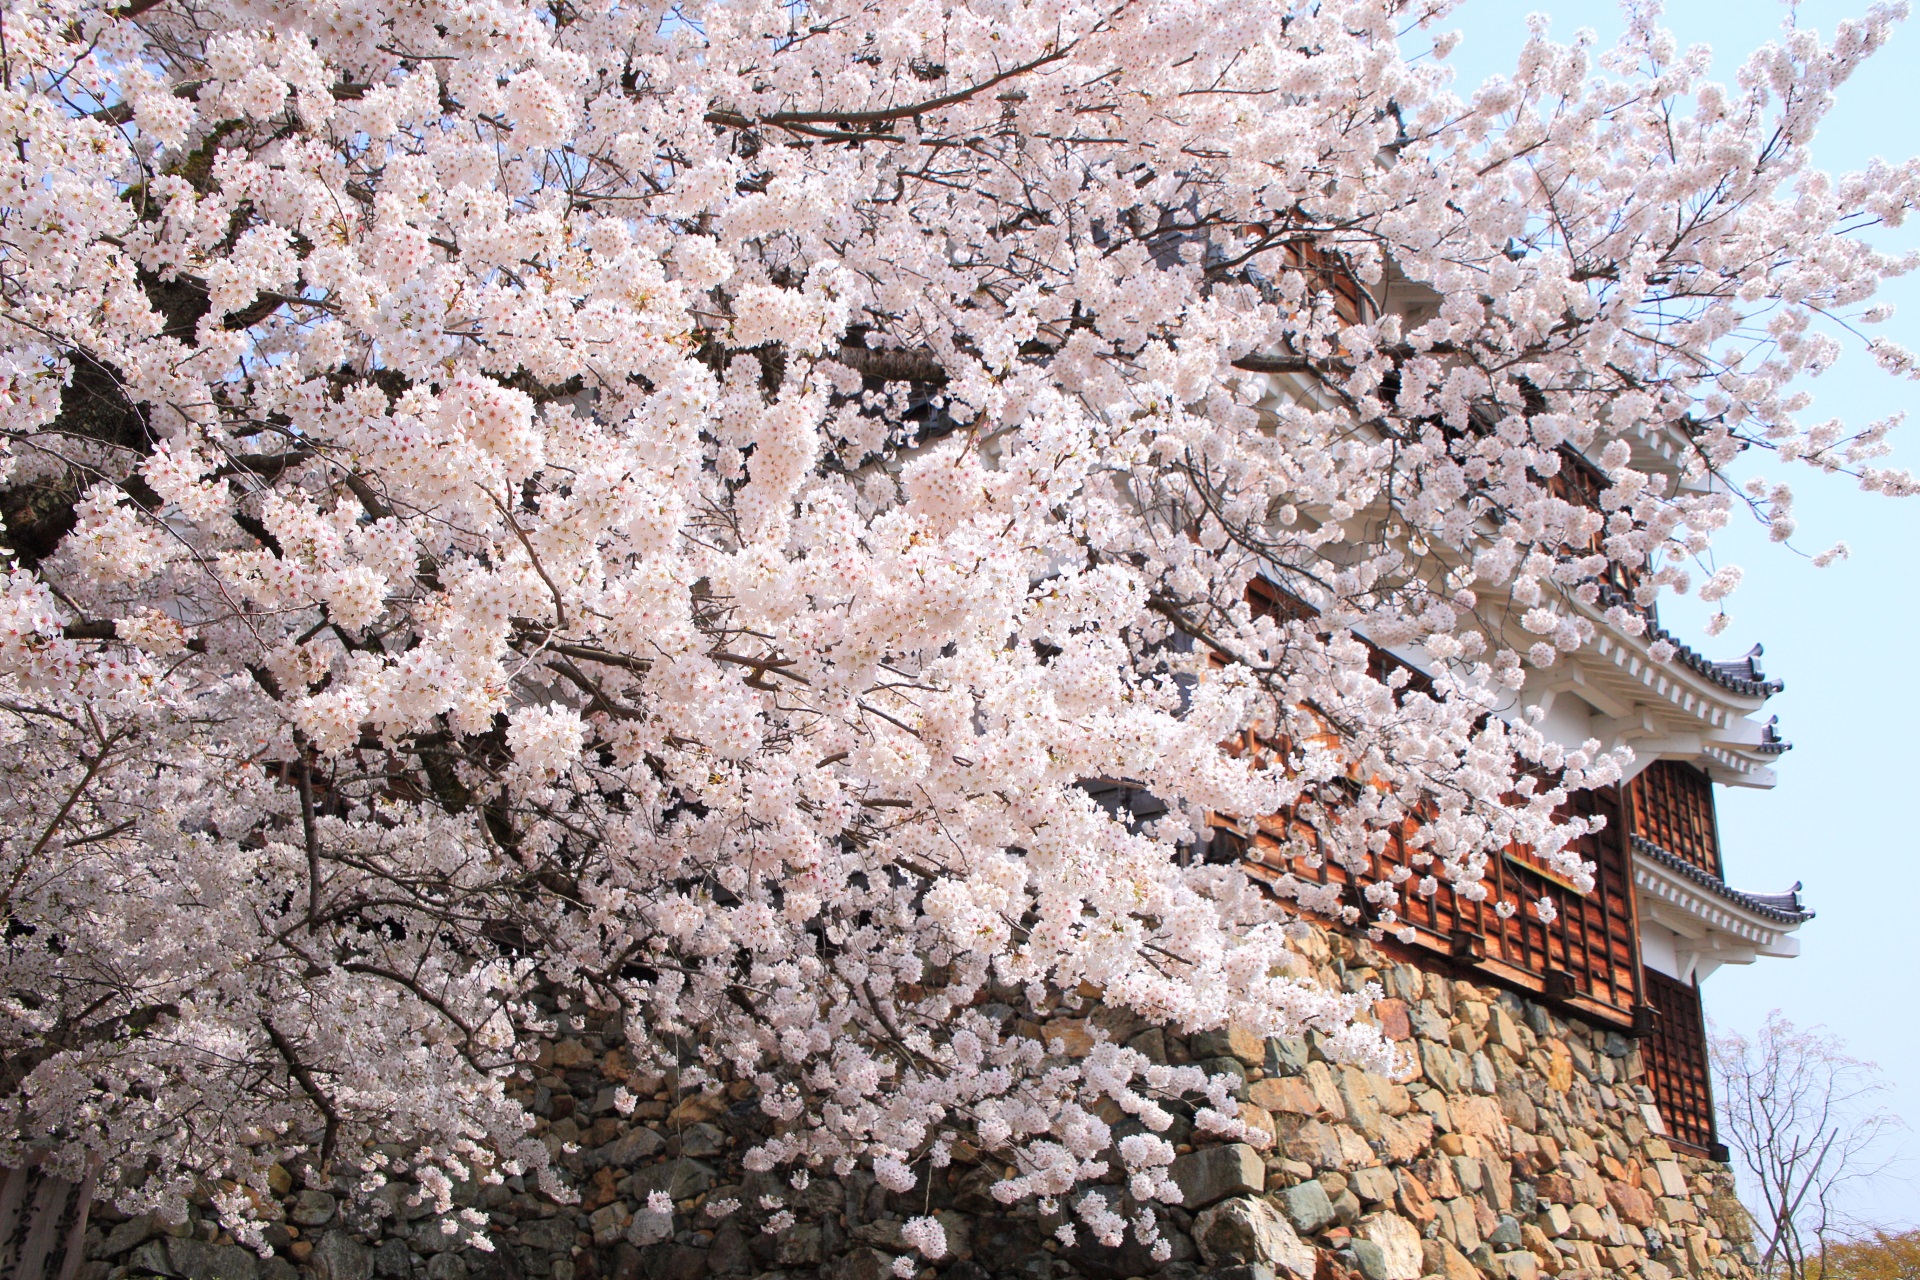 明智光秀が築城した福知山城と迫力の桜